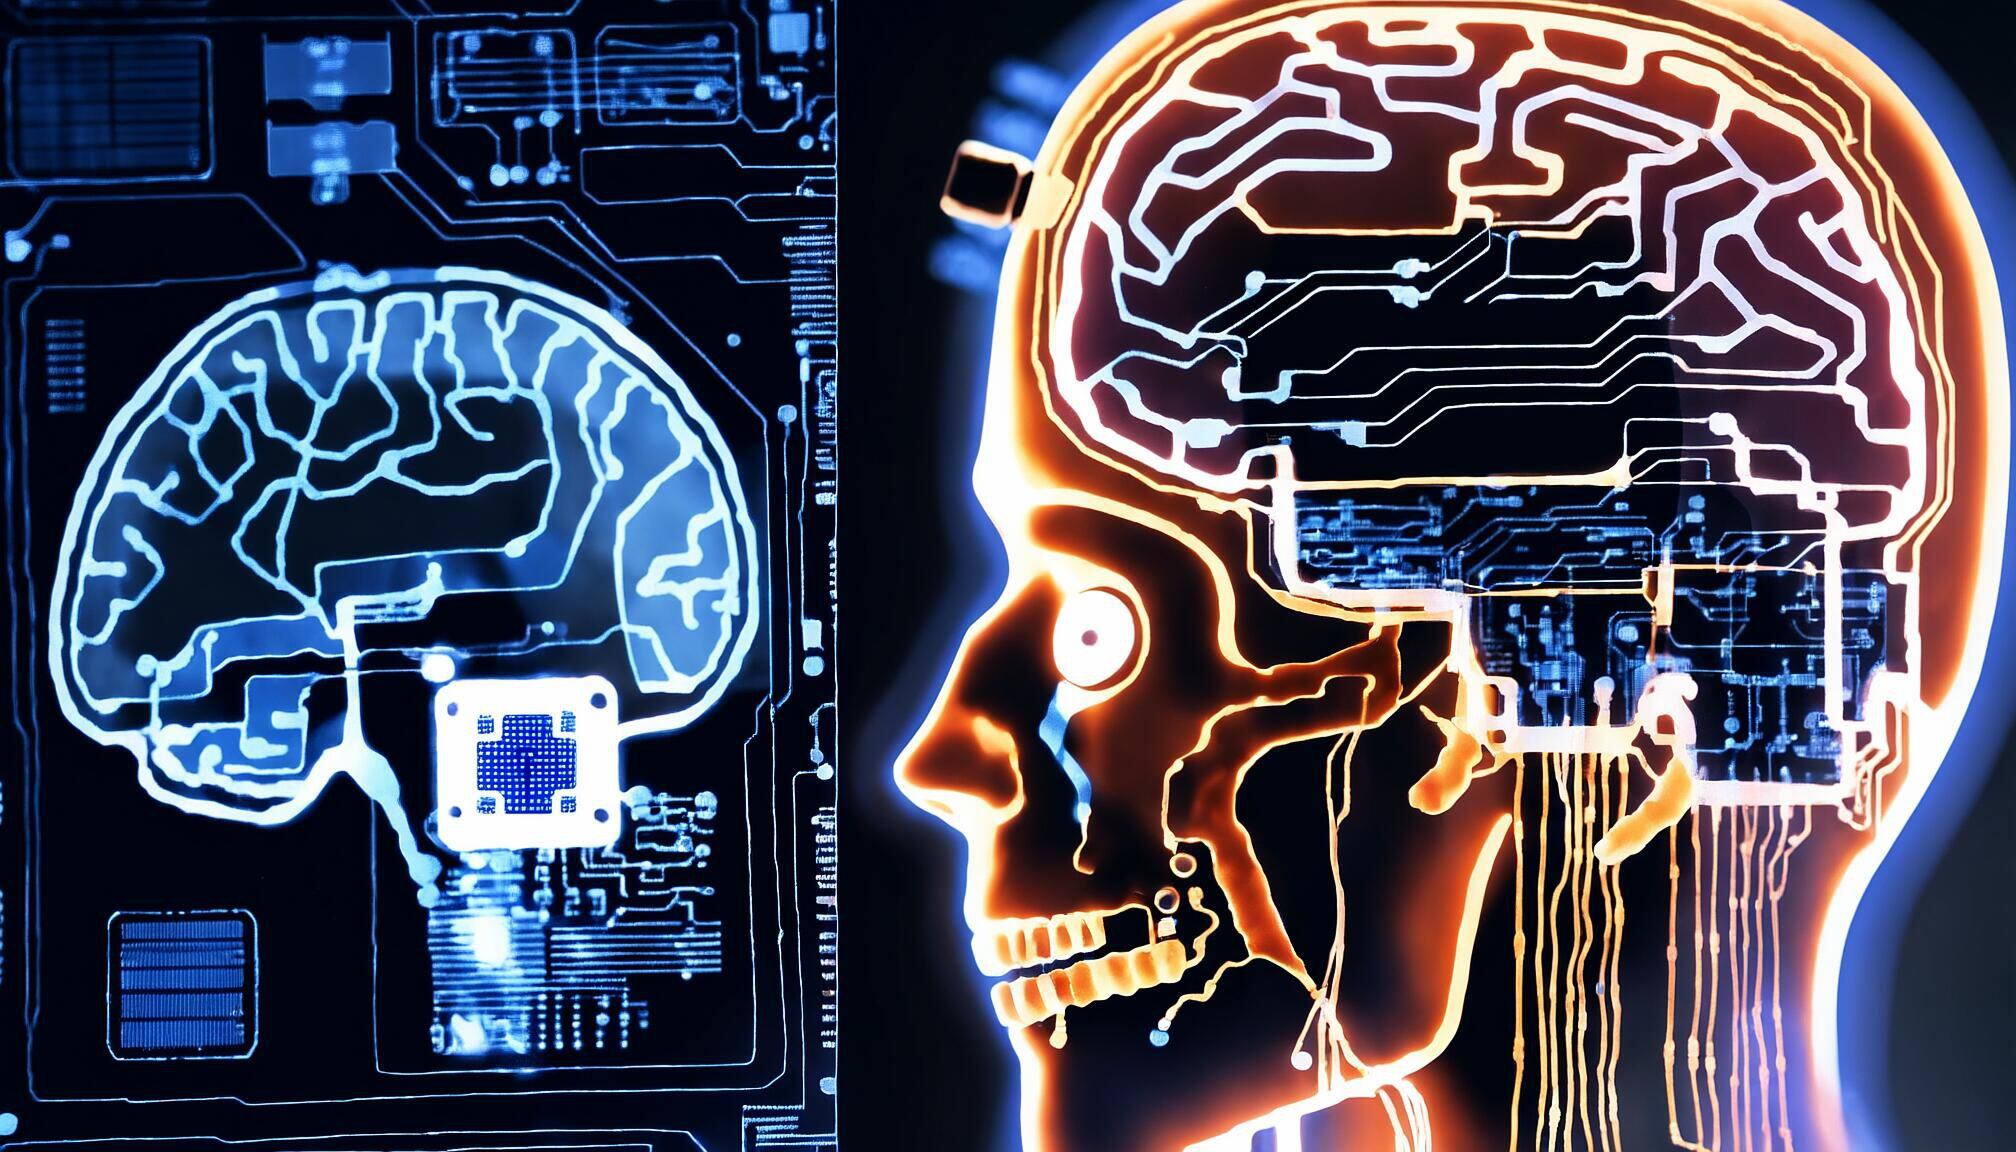 Impactante representación visual de un cerebro fusionado con tecnología, simbolizando la coexistencia entre humanos y máquinas en un escenario cyberpunk del futuro. (Imagen Ilustrativa Infobae)